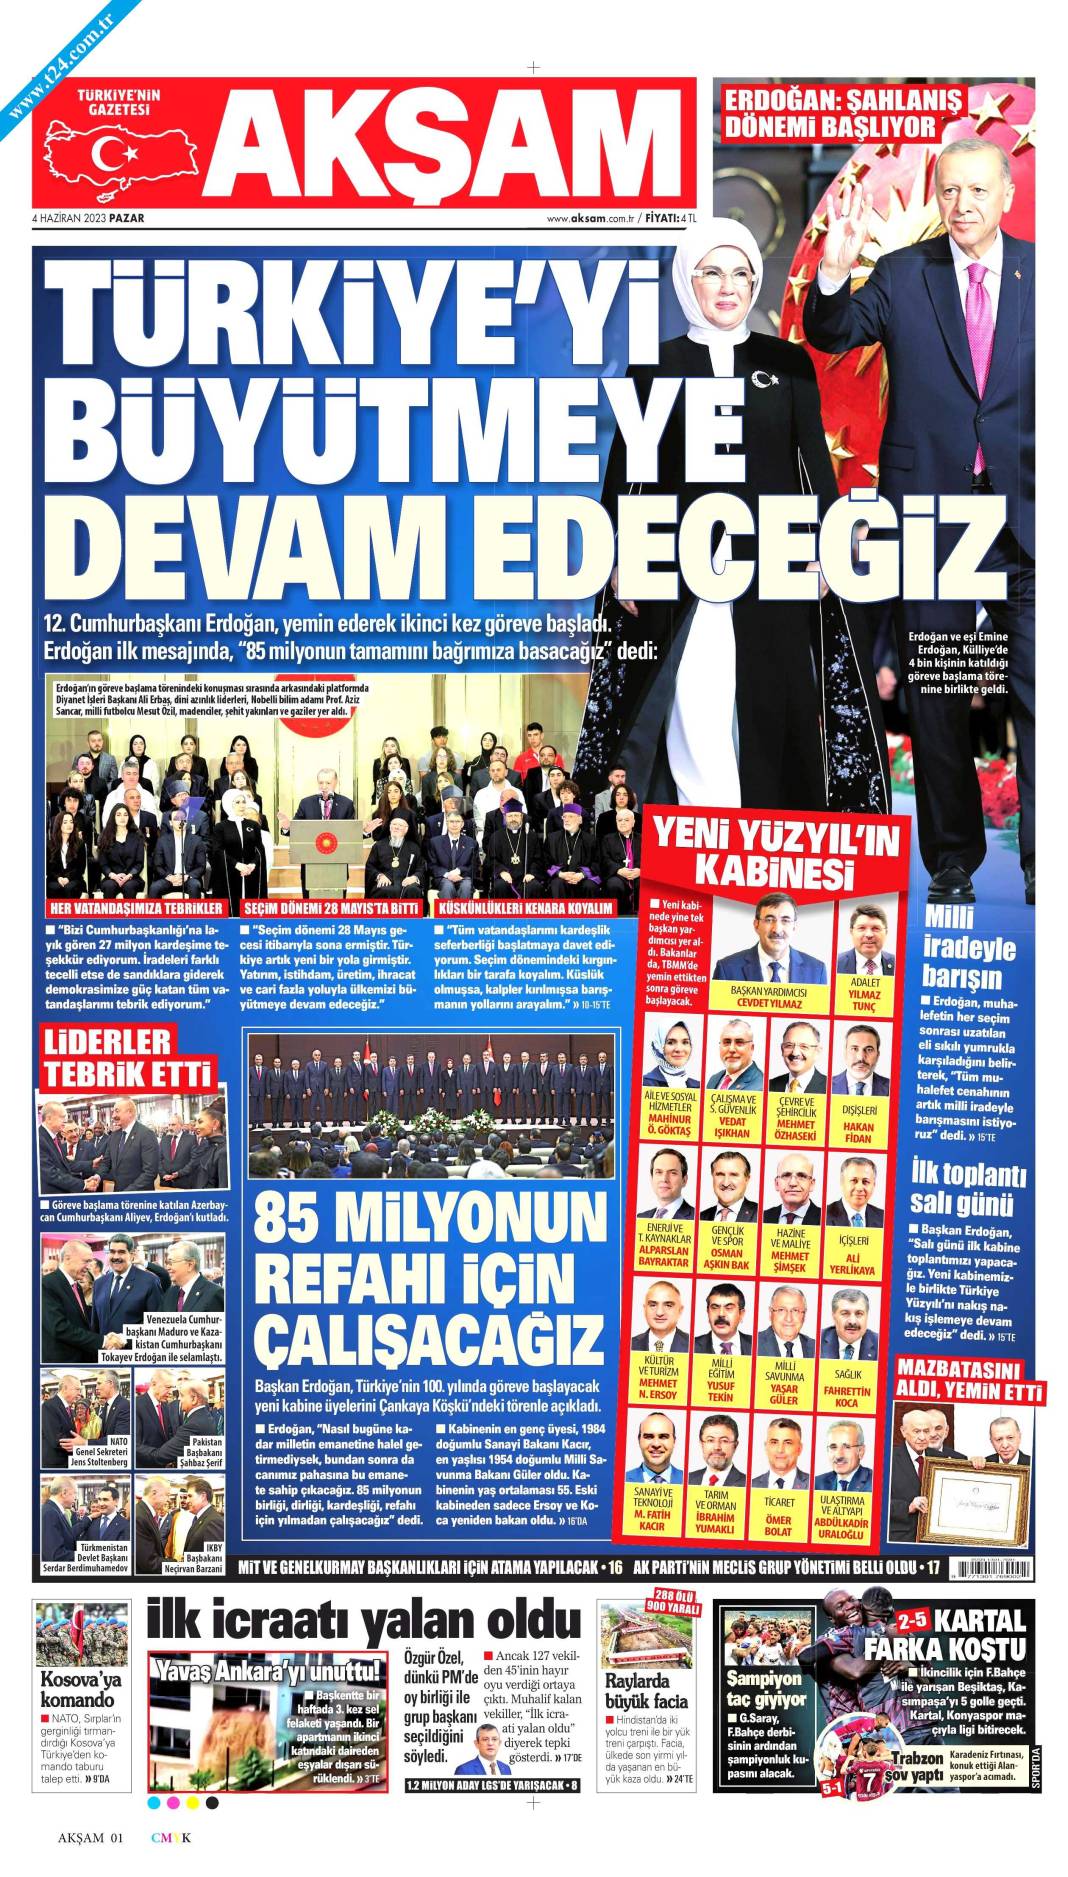 Gazeteler, Erdoğan’ın açıkladığı yeni kabine listesini manşetlerine nasıl taşıdı? İşte günün manşetleri 15